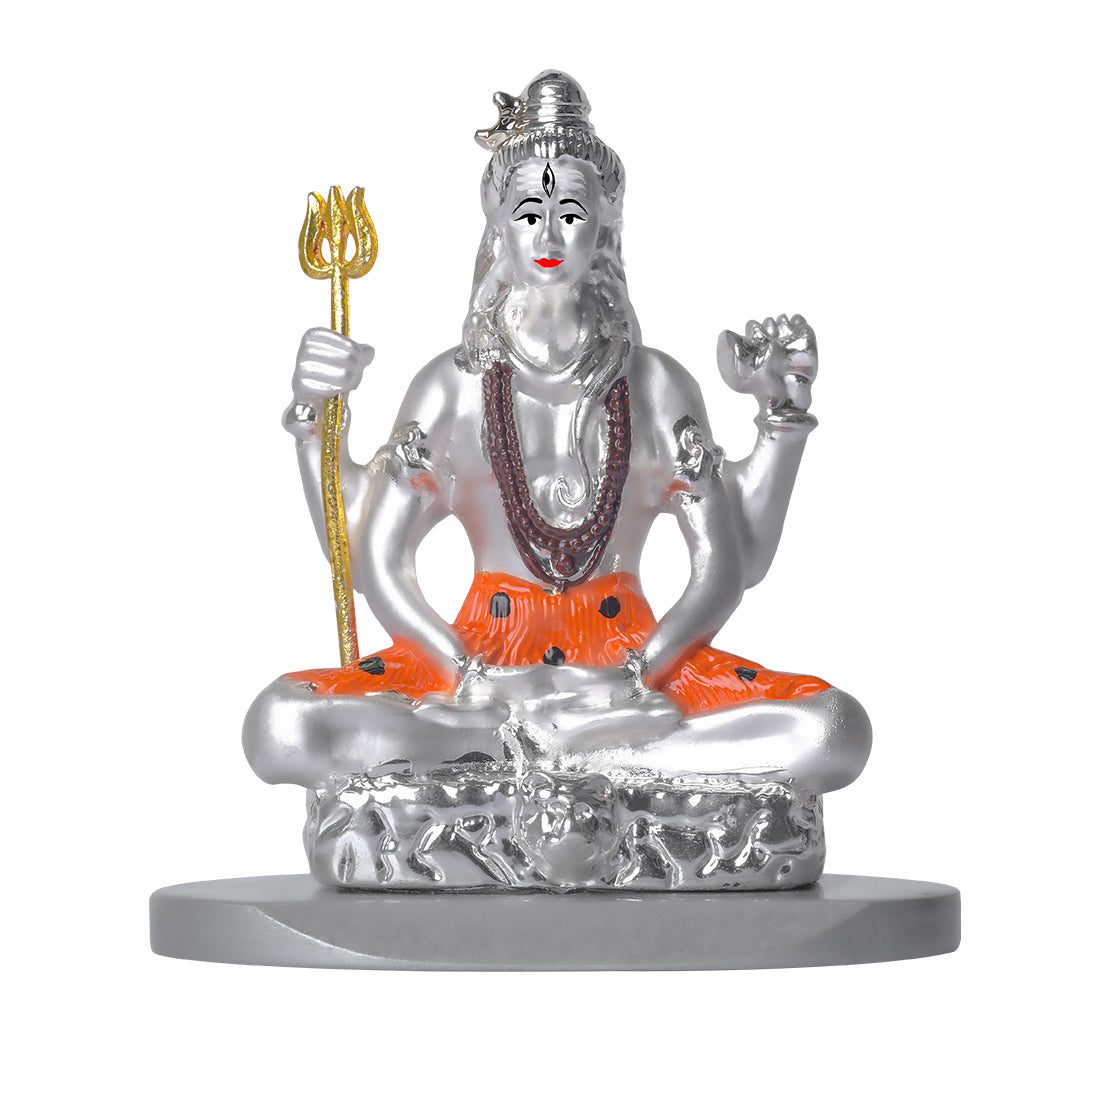 Buy Shiva Statue, Lord Shiva Statue, 17 Cm, Mahadev, Trishul, Trident,  Indian God, Shiv Shankar, Shiv, Adiyogi, Indian Arts, Hindu Gifts, Online  in India - Etsy